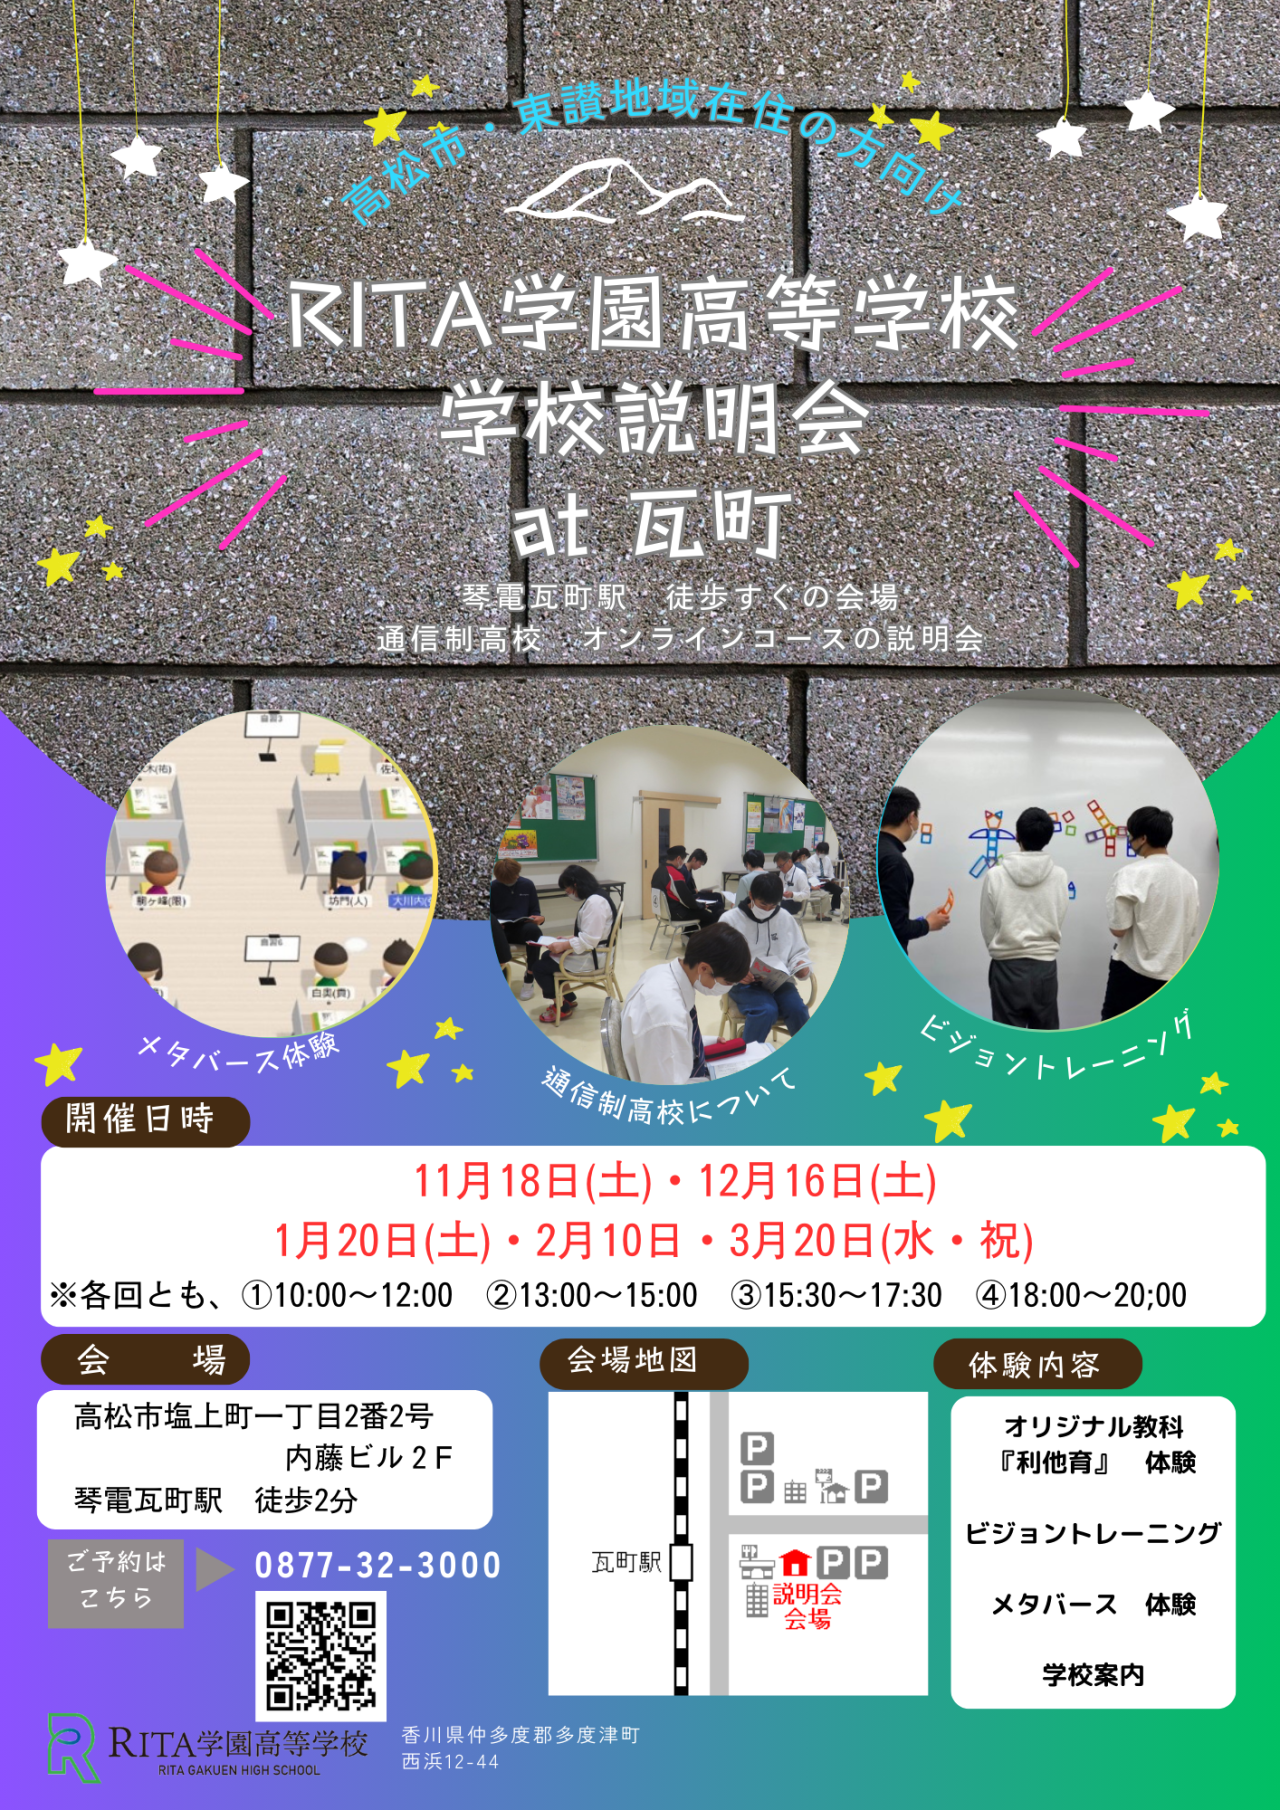 【イベント告知】RITA学園高等学校学校説明会 at 瓦町